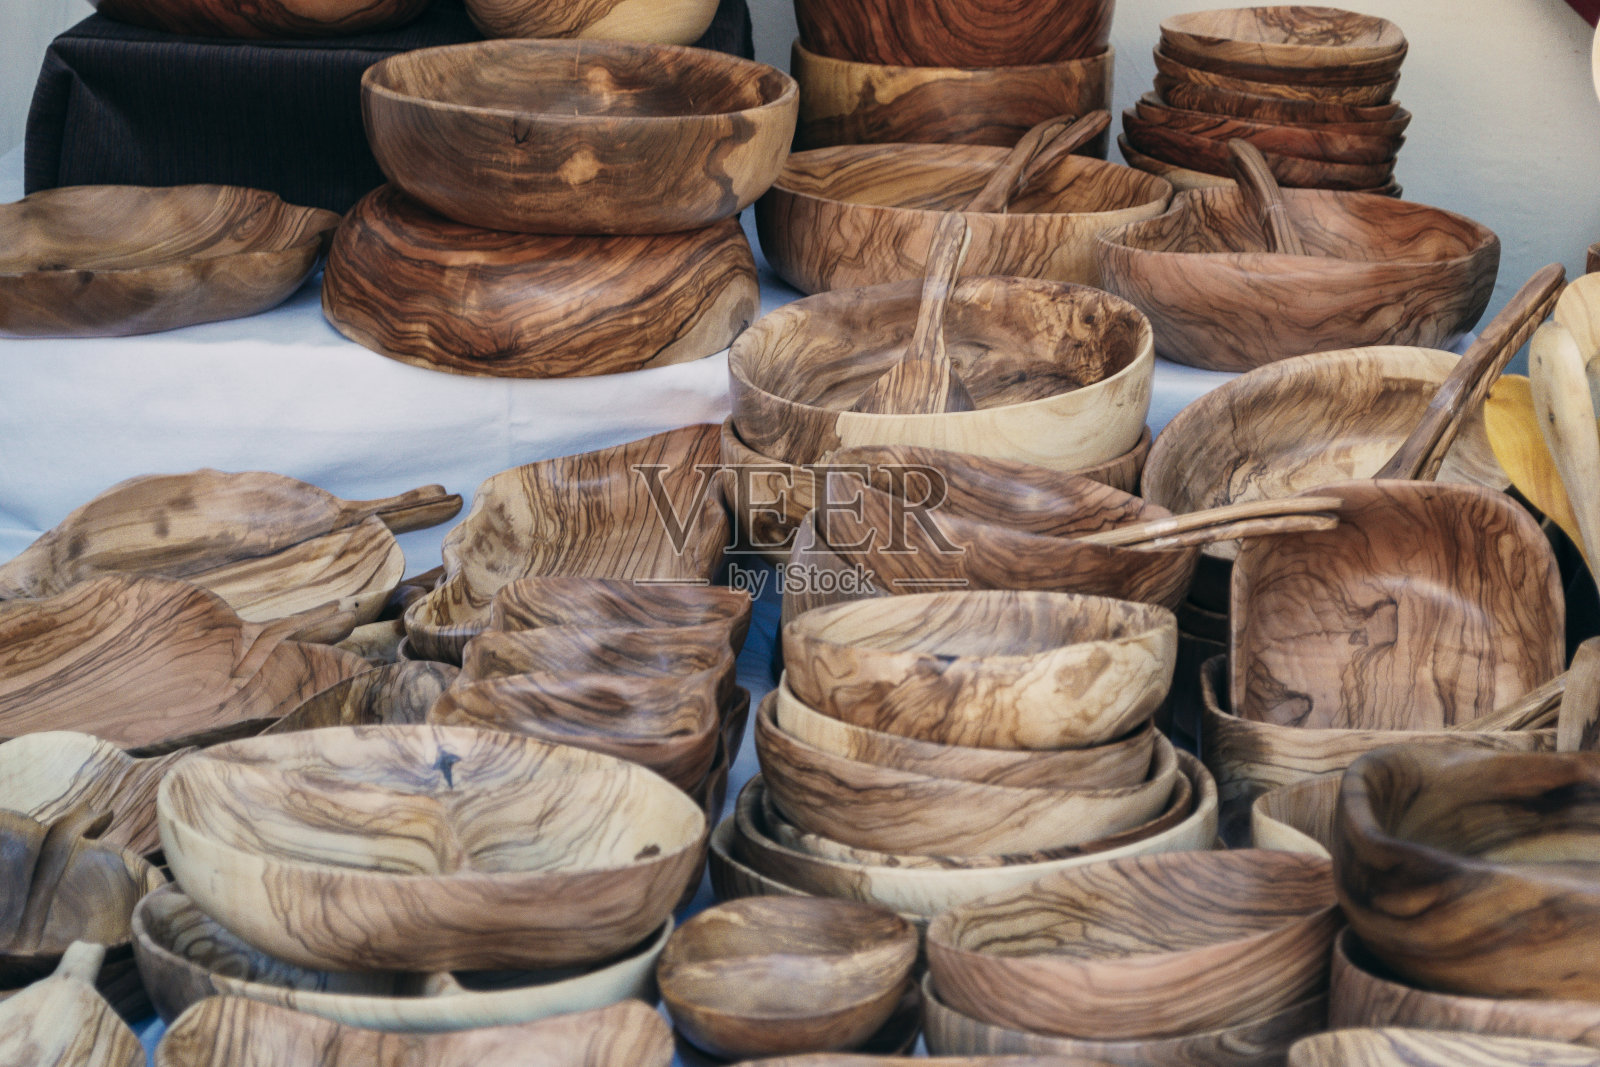 中世纪集市上的手工木器摊。手工艺品市场照片摄影图片